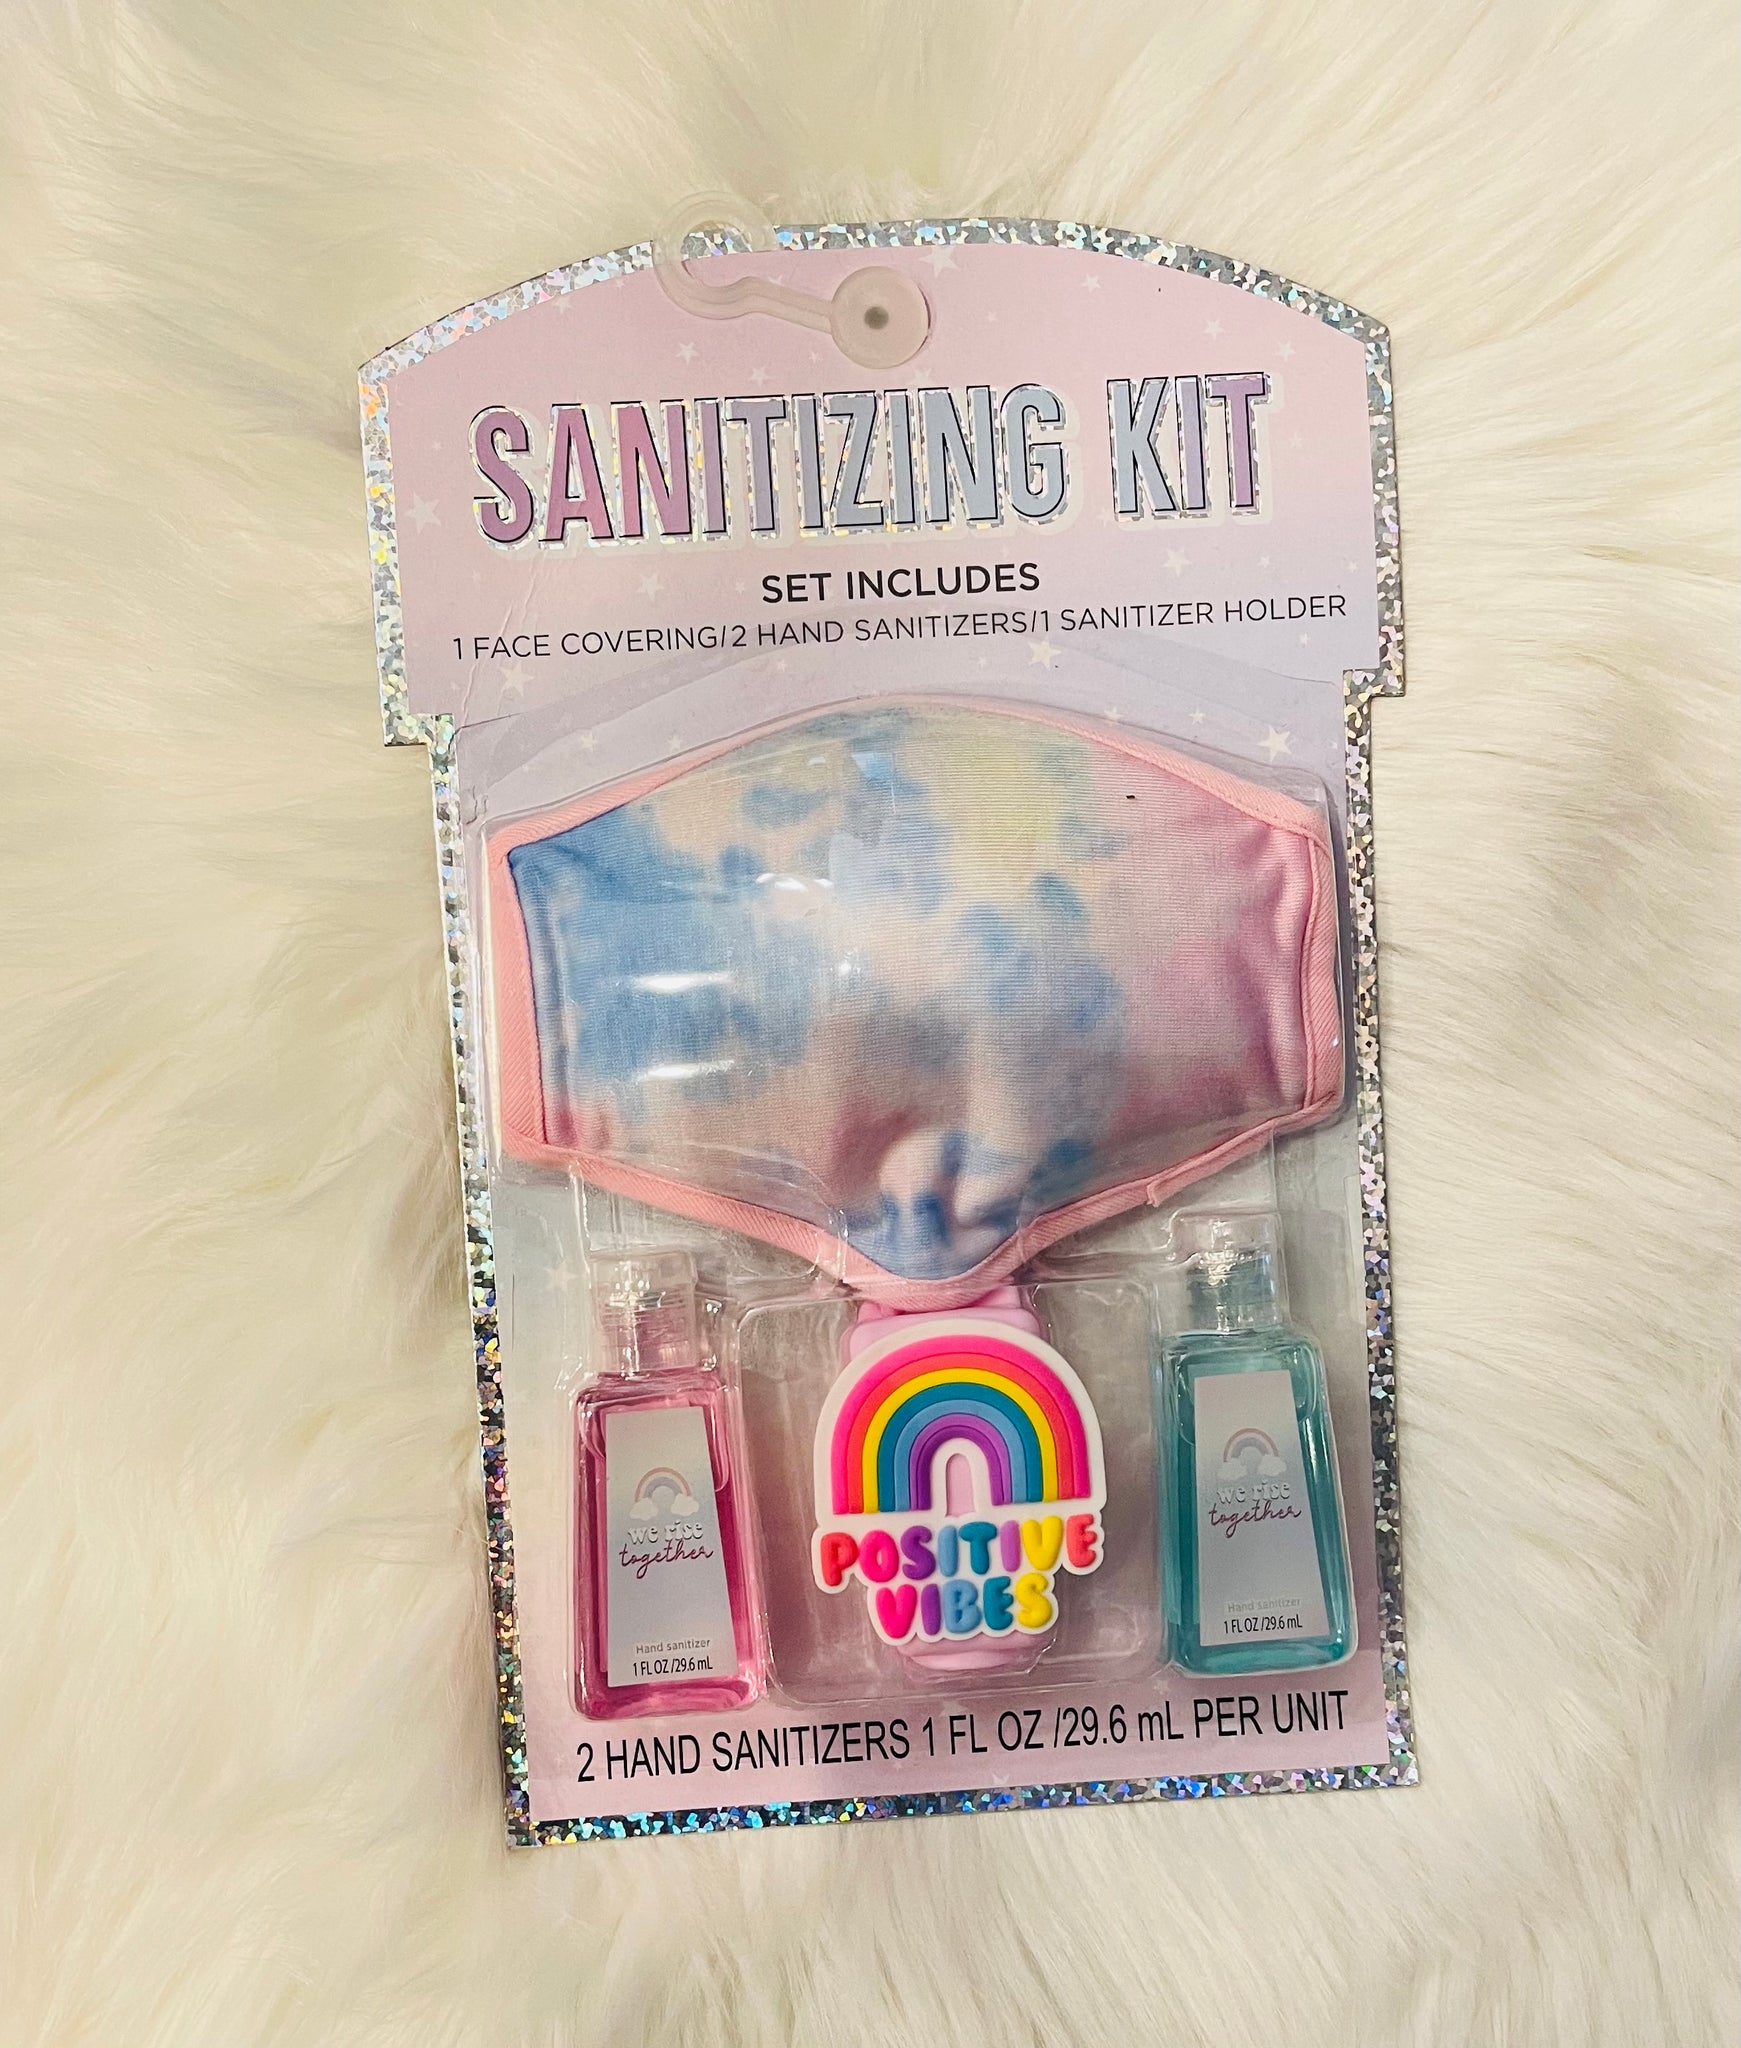 Sanitizing Kit